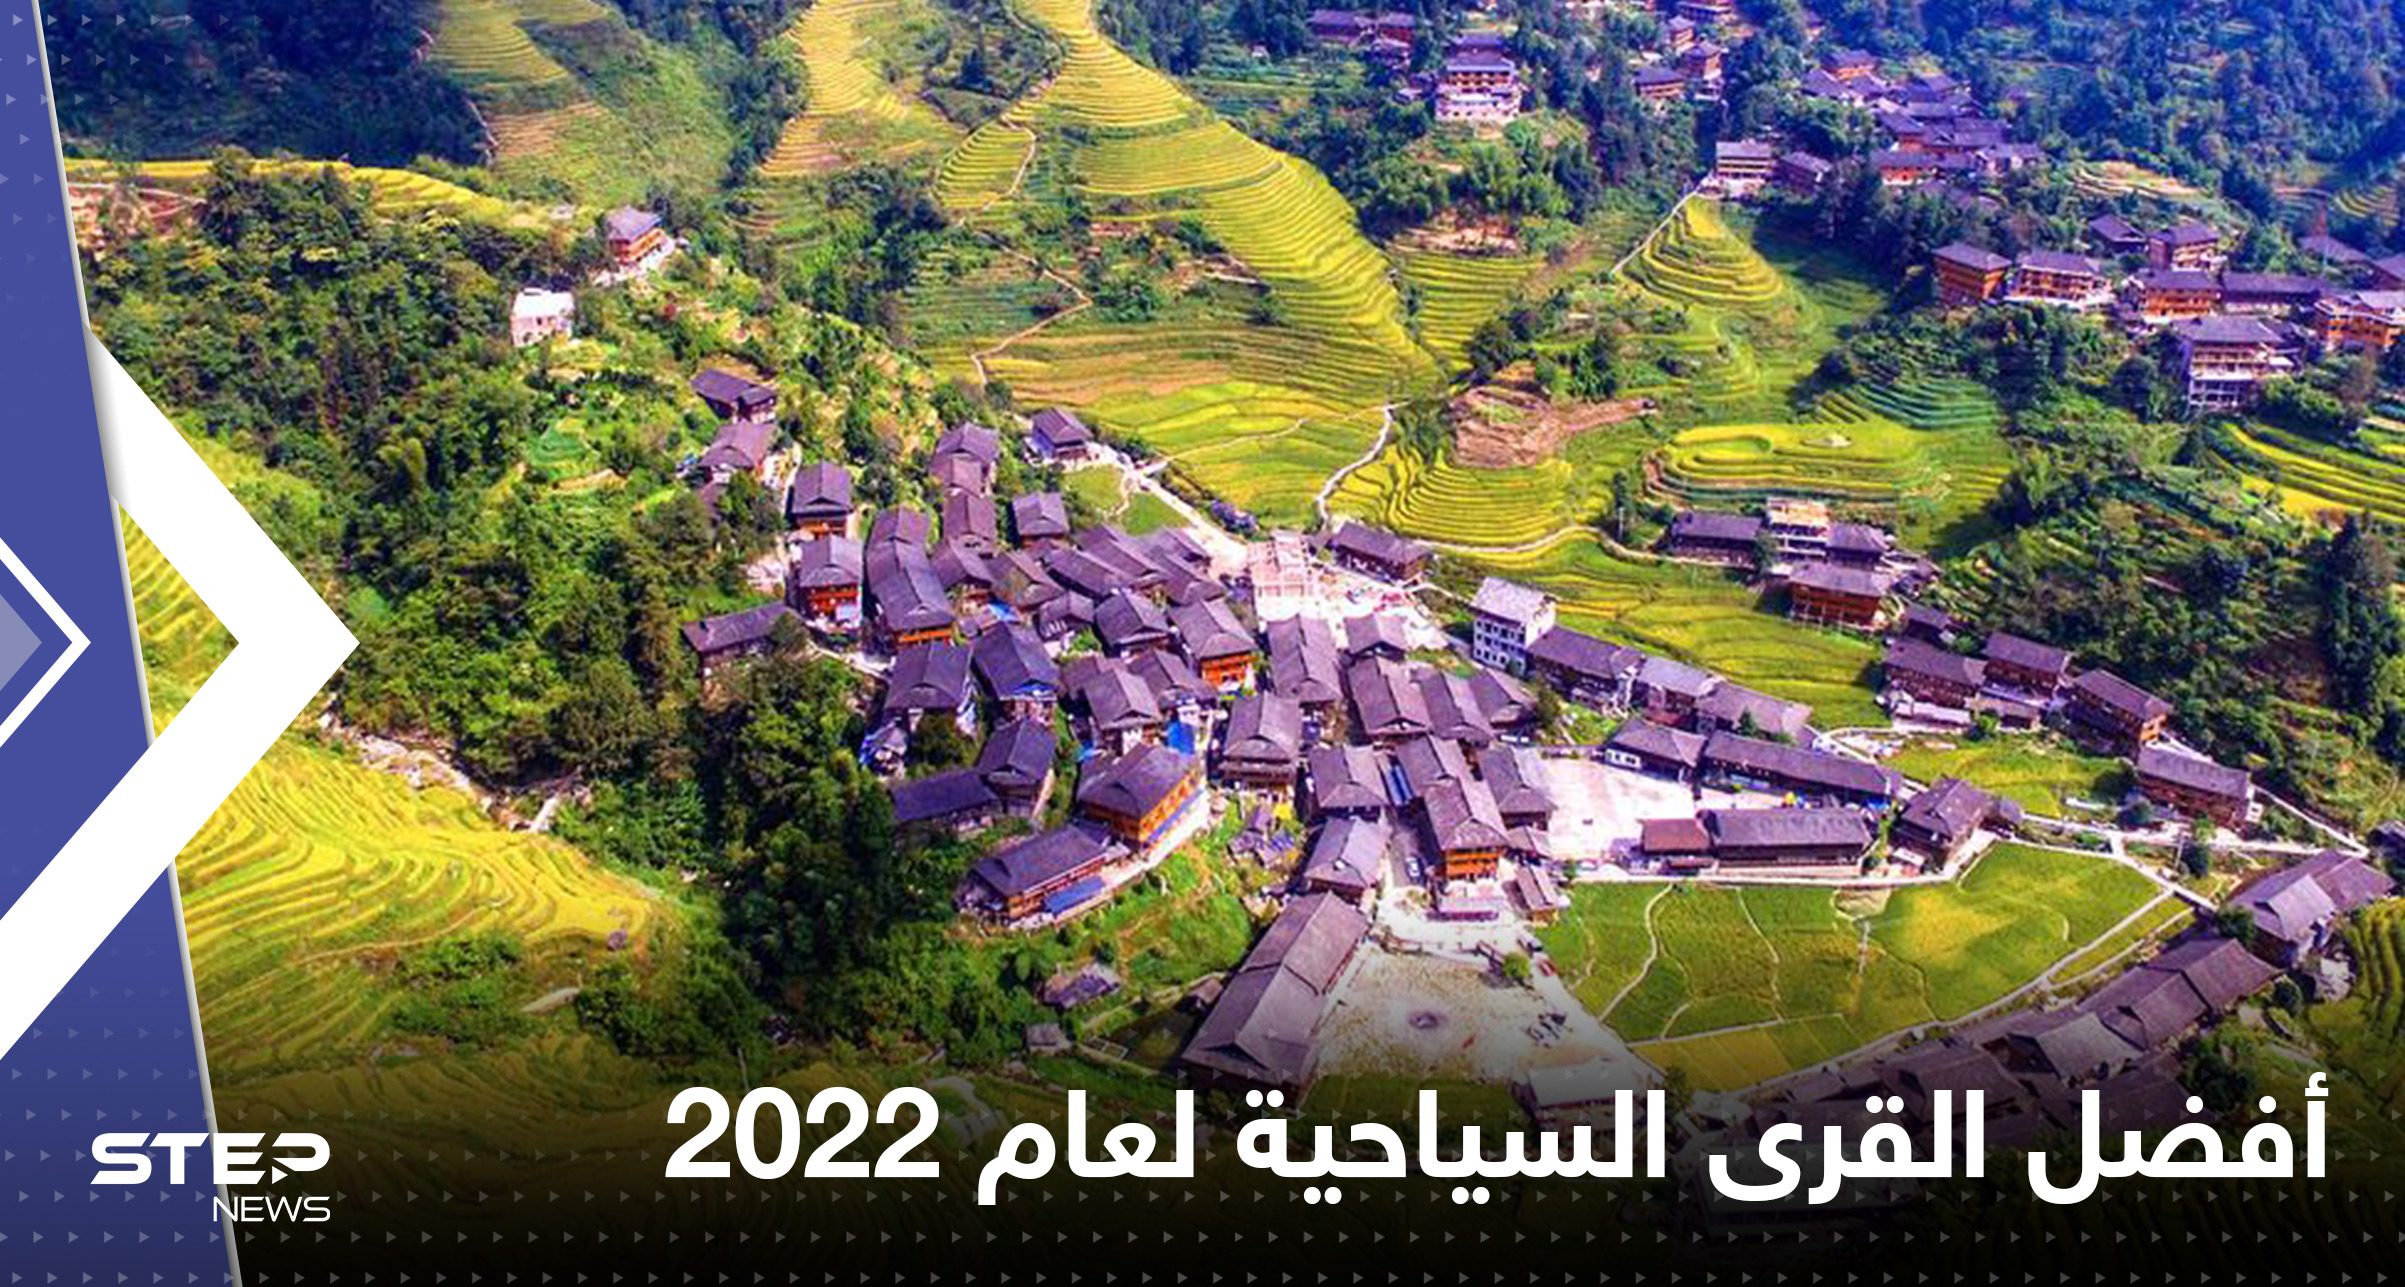 تعرّف إلى أفضل القرى السياحية لعام 2022.. منها في دول عربية